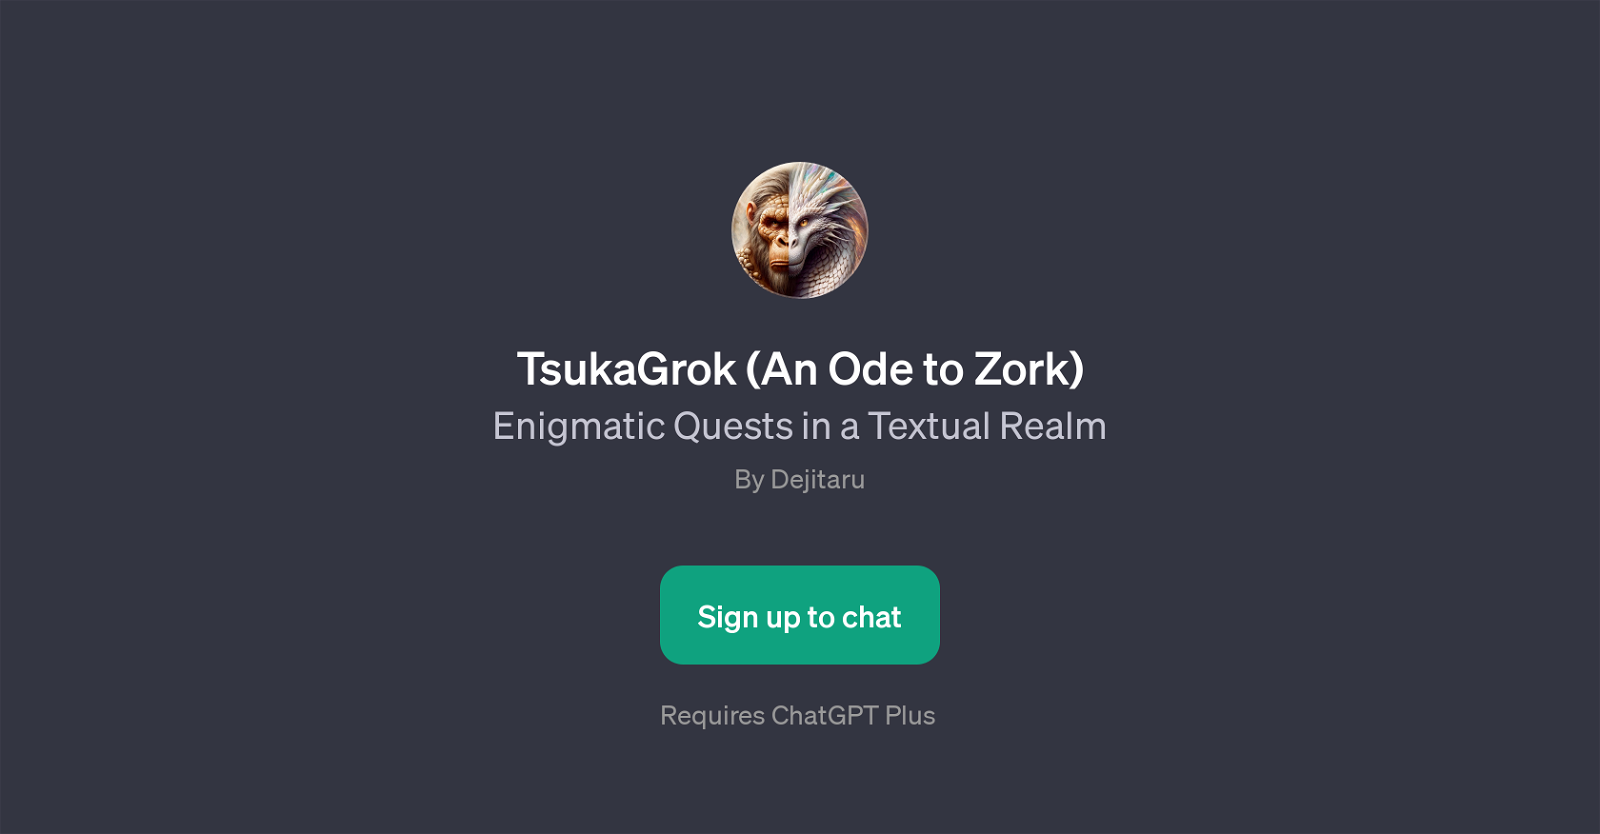 TsukaGrok (An Ode to Zork) website